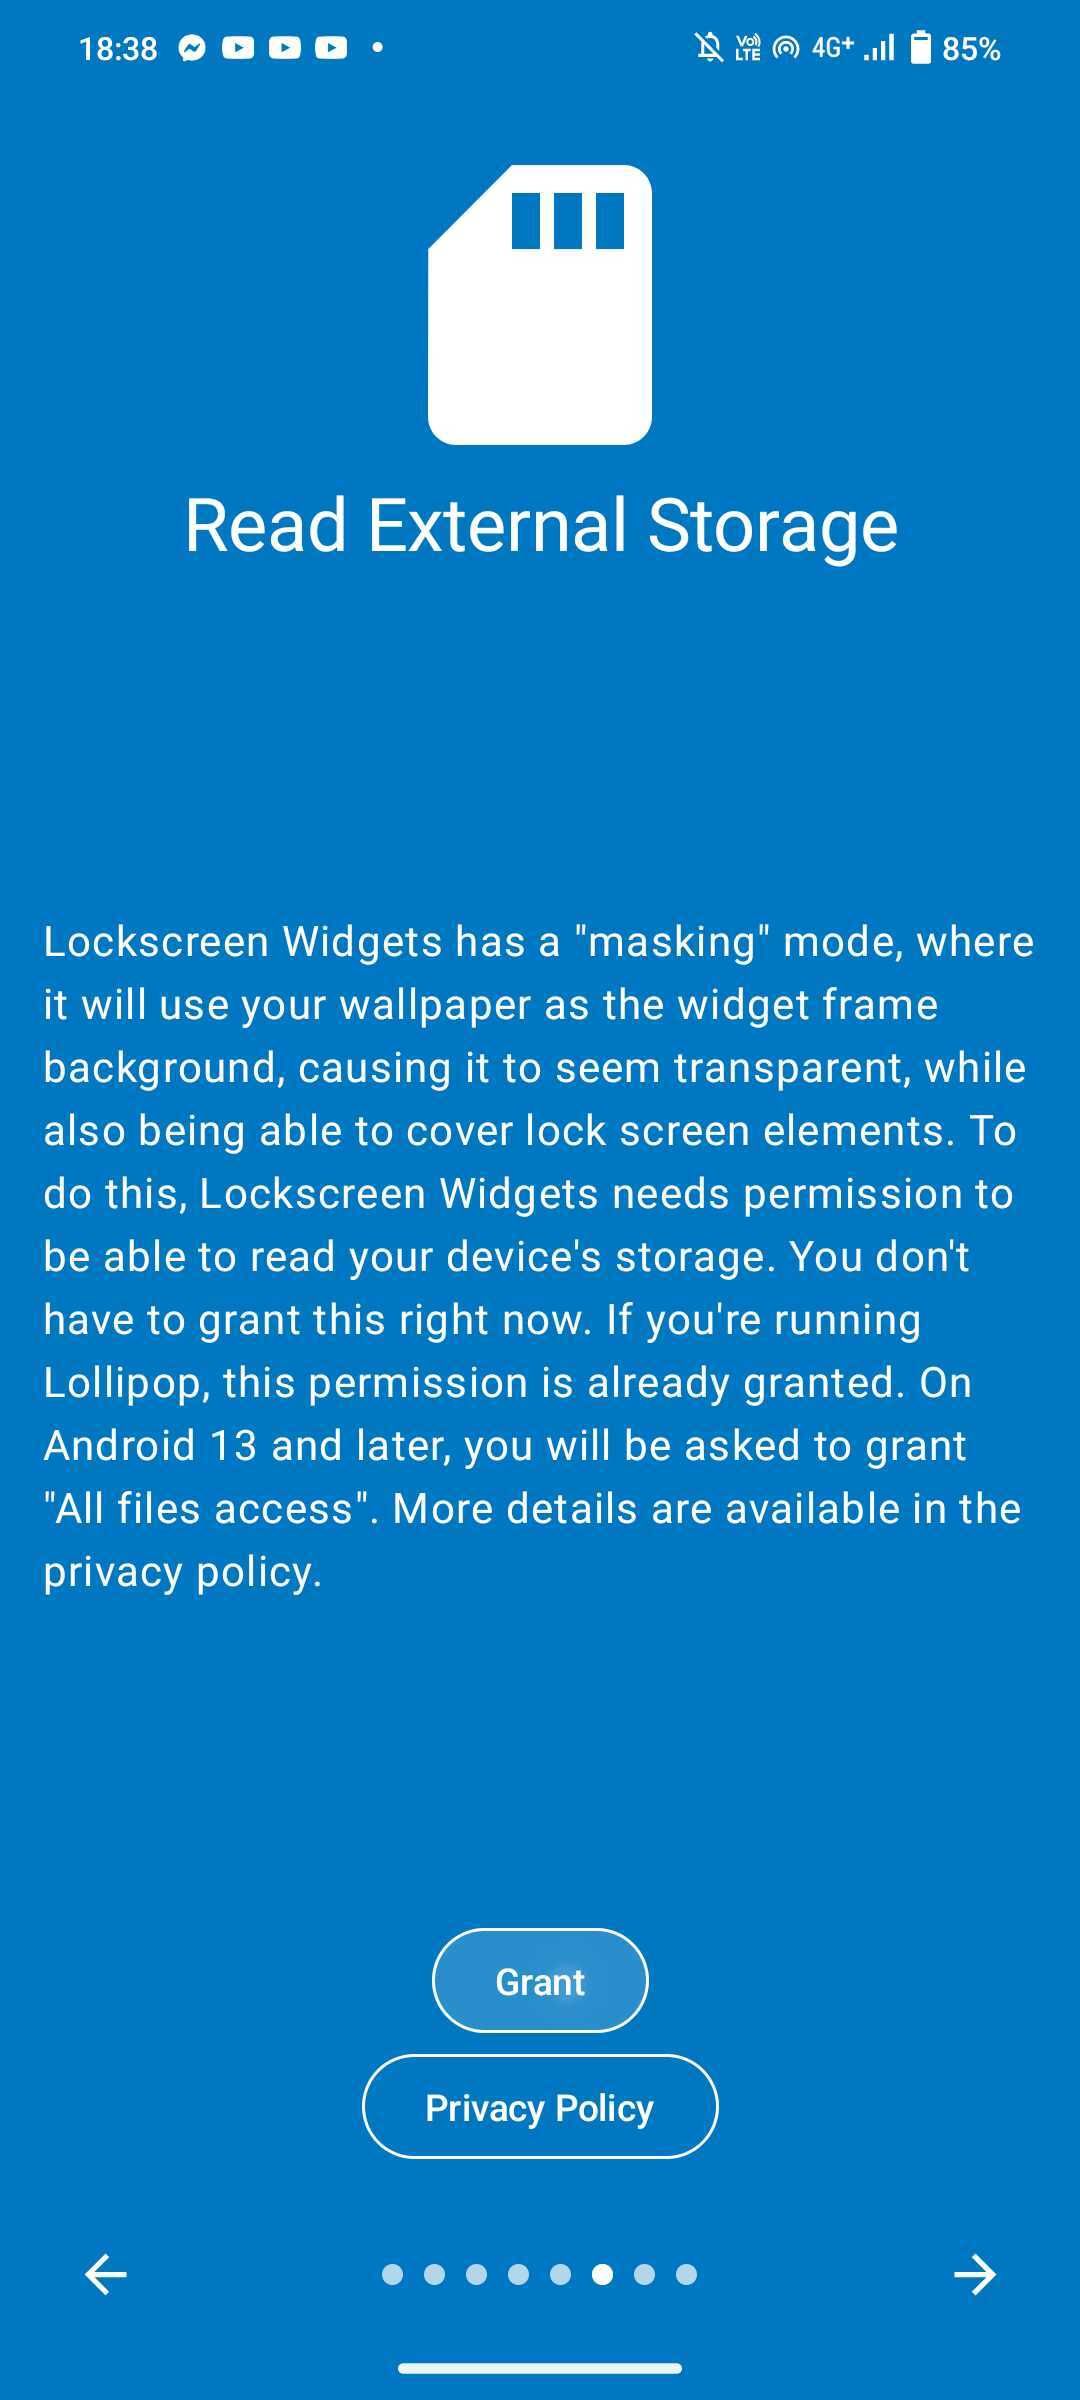 Lockscreen Widgets Read External Storage setting